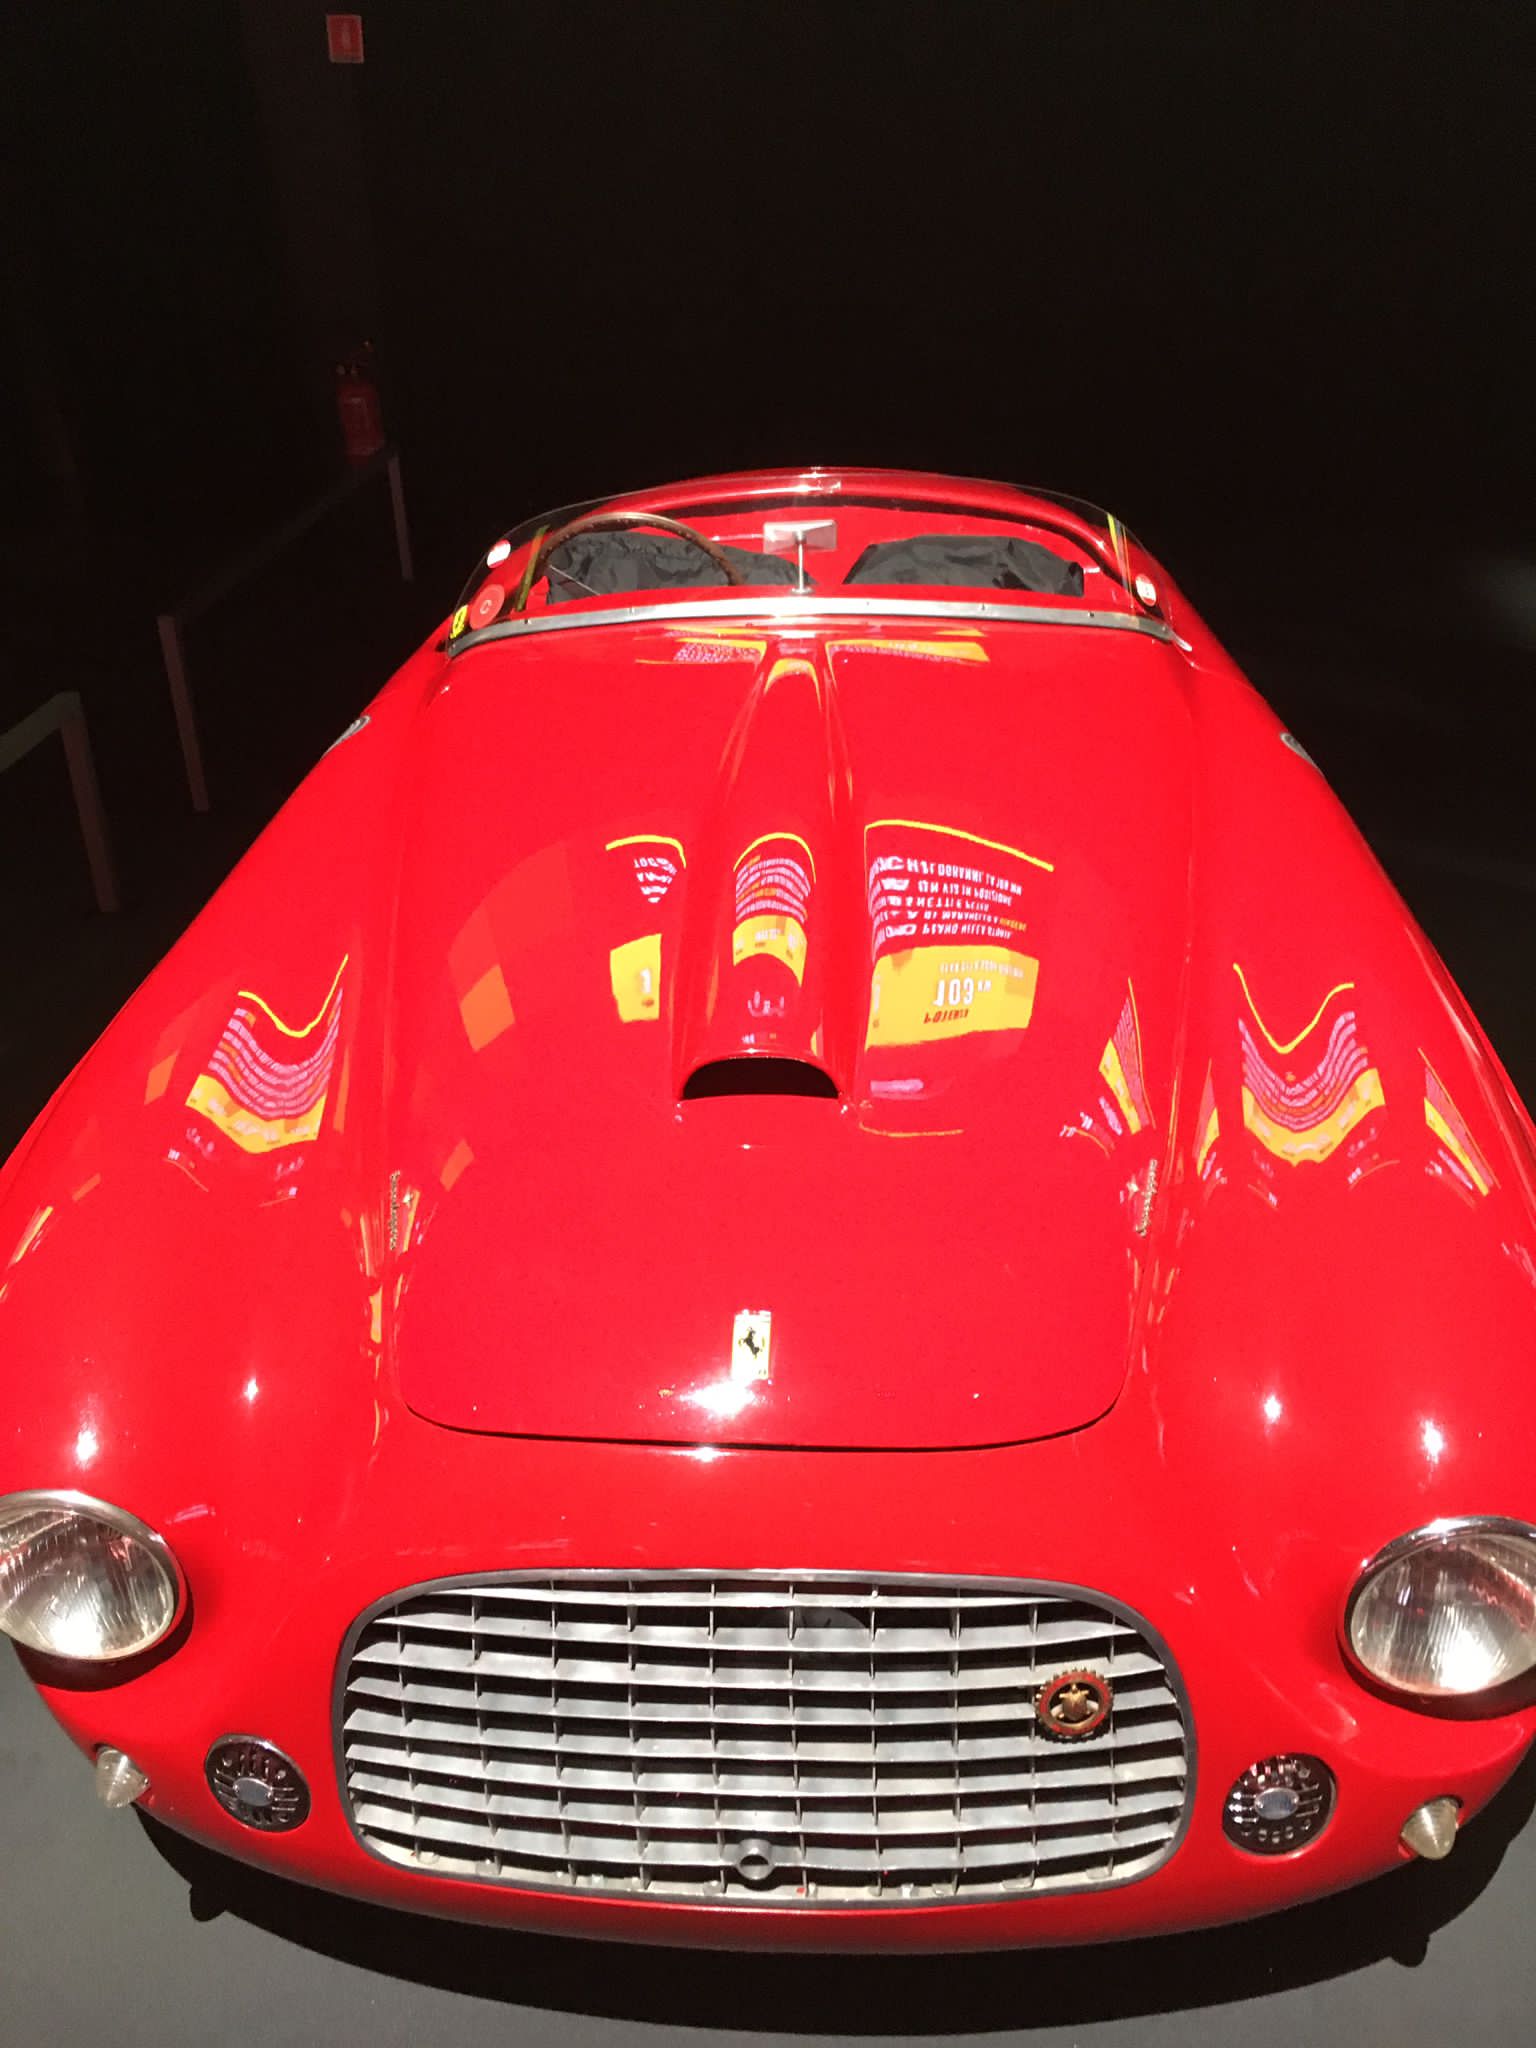 A vintage Ferrari.